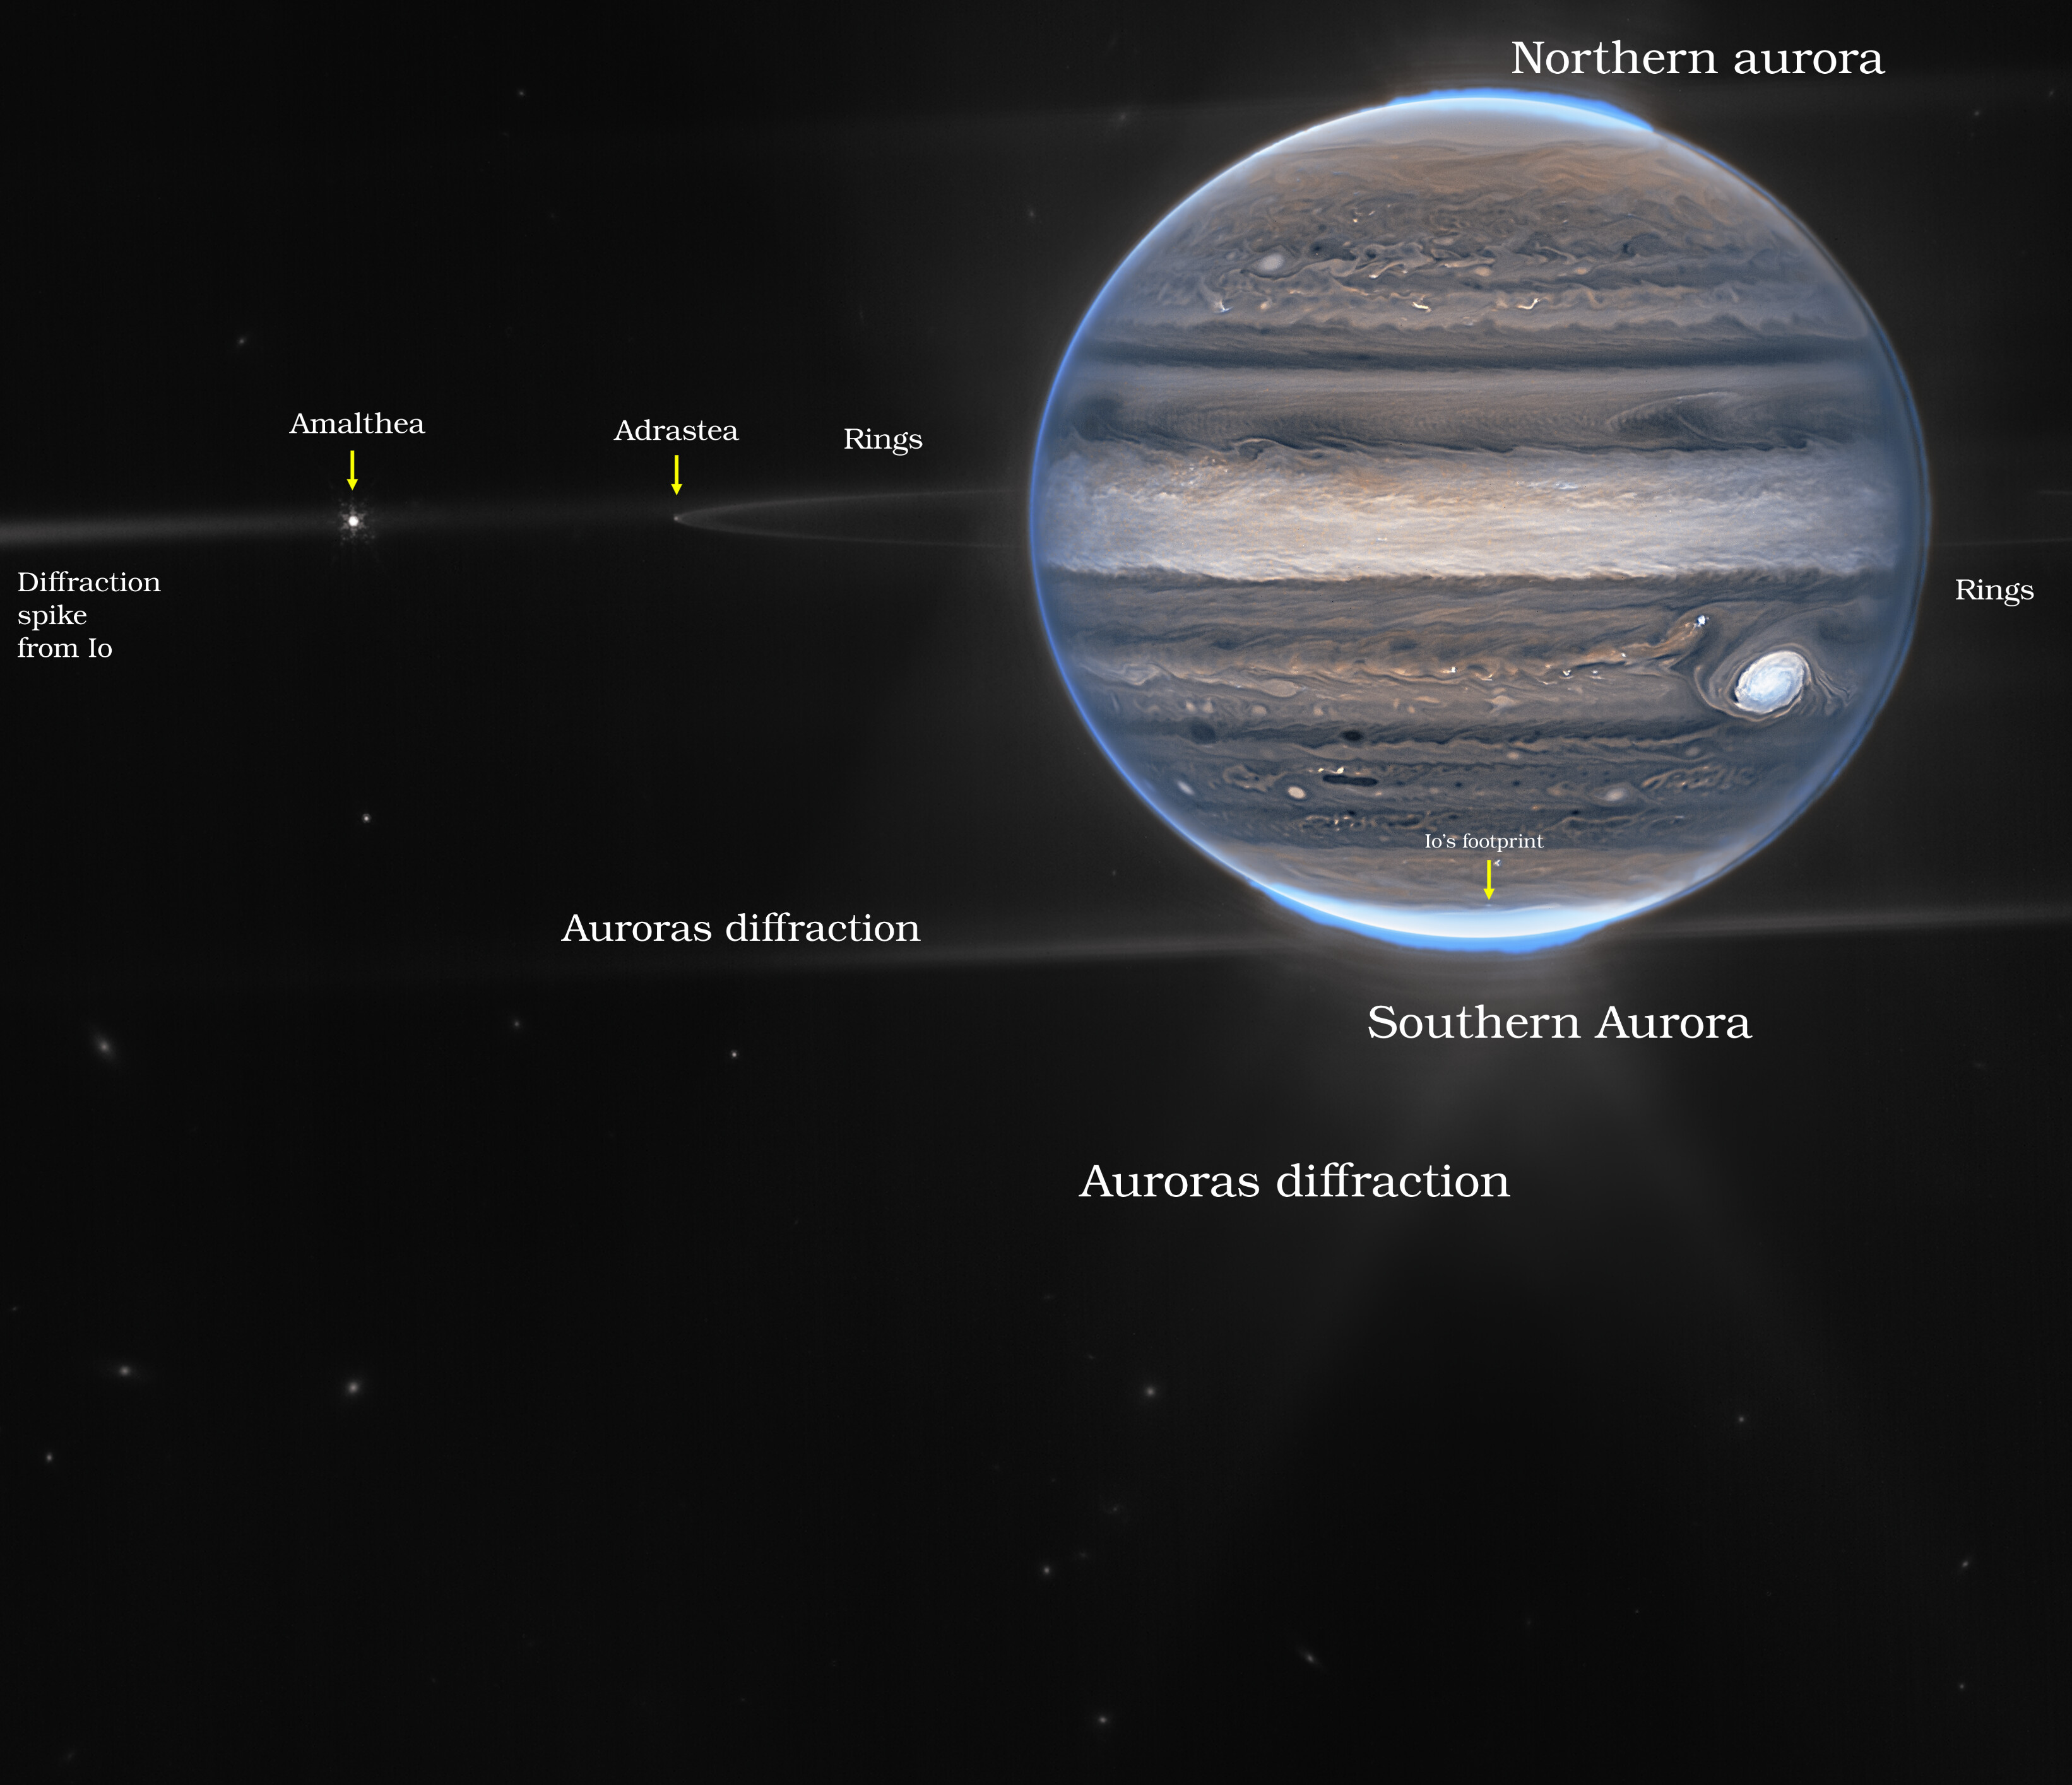 Na ilustracji: Zdjęcie Jowisza zrobione Teleskopem Webba z kamerą NIRCam  – w dwóch barwach / filtrach: F212N (pomarańczowy) i F335M (cyjan/niebieskozielony)  – oraz w dwóch wersjach: bez etykiet (u góry), z etykietami (na dole). Na zdjęciu widać szczegóły atmosfery Jowisza (np. gigantyczne burze, potężne wiatry, zorze polarne), jego pierścienie (około milion razy słabsze niż planeta), niektóre małe księżyce (Amaltea, Adrastea), a nawet galaktyki w tle (rozmyte plamki). Słynna burza – Wielka Czerwona Plama, trwająca w atmosferze Jowisza już od co najmniej 400 lat, wydaje się biała na zdjęciu – podobnie jak inne chmury. Jest to spowodowane odbijaniem dużej ilości światła słonecznego. W przeciwieństwie do tego, ciemne pasma na północ od obszaru równikowego mają małe pokrycie chmurami. Na tym zdjęciu jeżeli coś jest jasne, to znaczy, że jest wysoko w atmosferze Jowisza. Dlatego Wielka Czerwona Plama posiada takie zamglenia na dużej wysokości – podobnie jak  obszar równikowy. Liczne jasne, białe plamy i pasemka są najprawdopodobniej bardzo wysokimi wierzchołkami chmur z burz konwekcyjnych. Źródło: NASA, ESA, CSA, Jupiter ERS Team; opracowanie zdjęcia Ricardo Hueso (UPV/EHU) i Judy Schmidt (projekt nauki obywatelskiej)